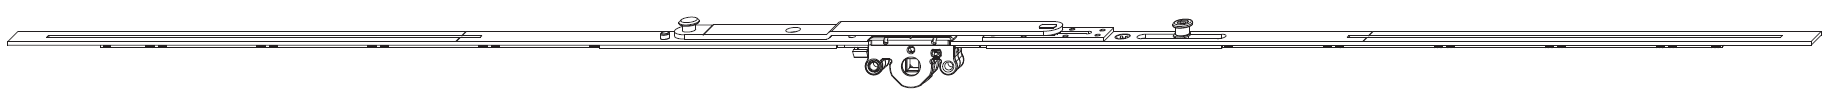 MAICO -  Cremonese MULTI-MATIC per vasistas altezza maniglia variabile con forbice per ribalta premontata - gr / dim. 1000 - entrata 15 - alt. man. CENTRALE - lbb/hbb 701-1000